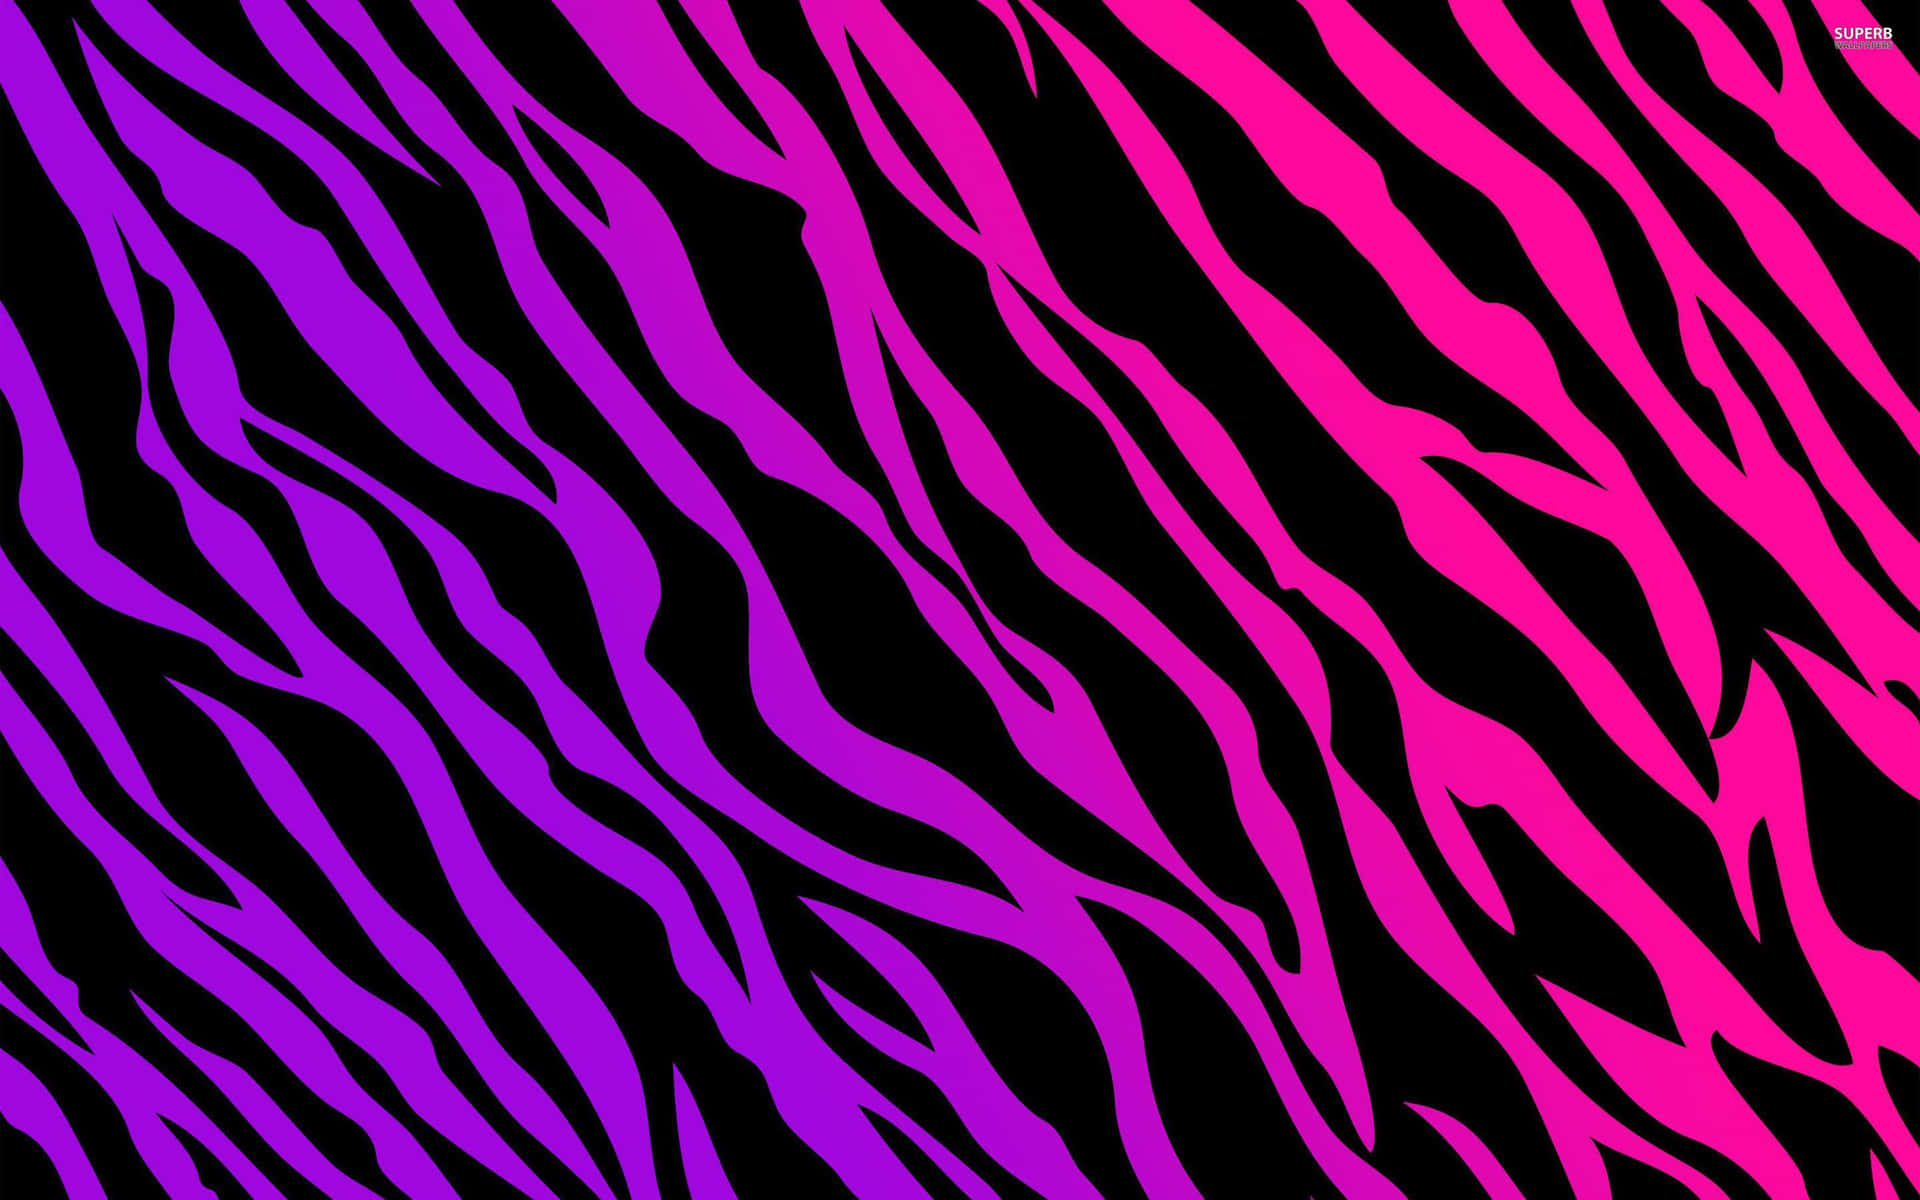 100+] Pink Zebra Wallpapers